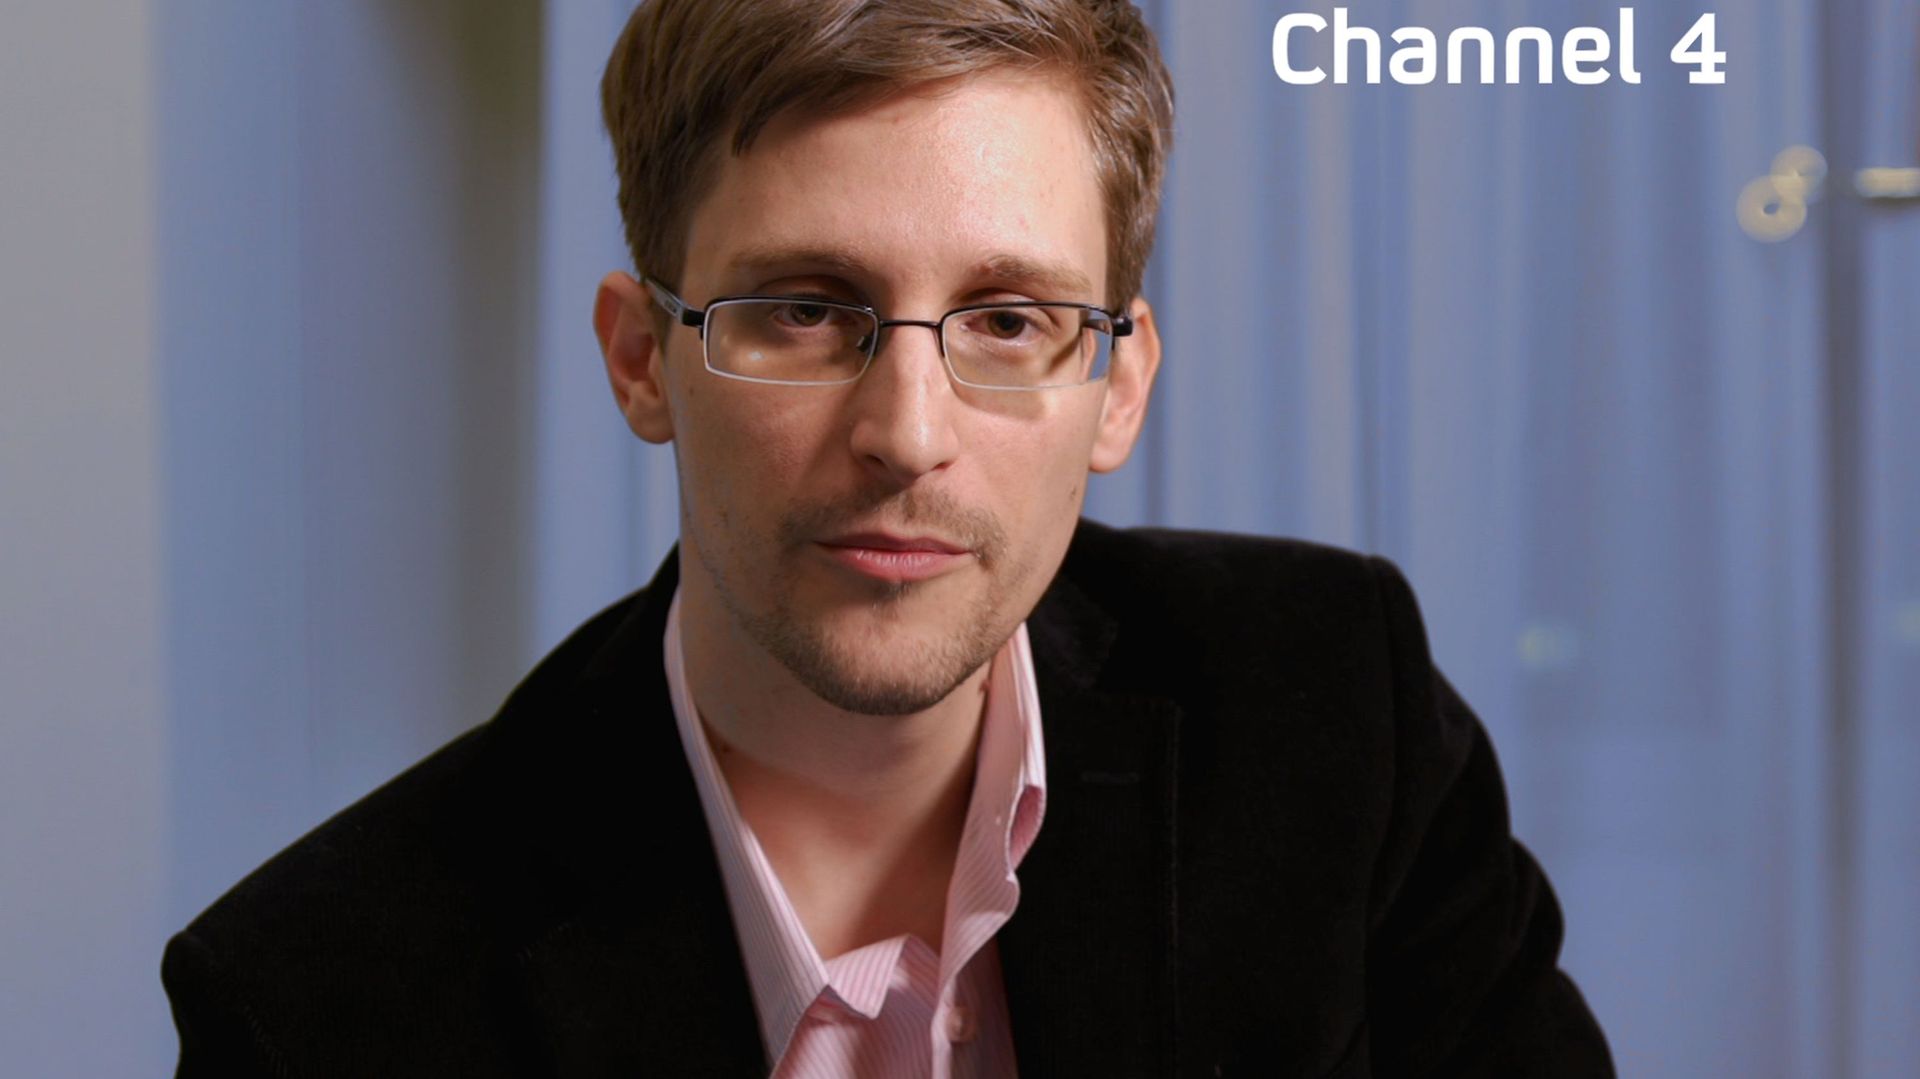 Edward Snowden a délivré son propre message de Noël sur la chaîne télévisée britannique Channel 4